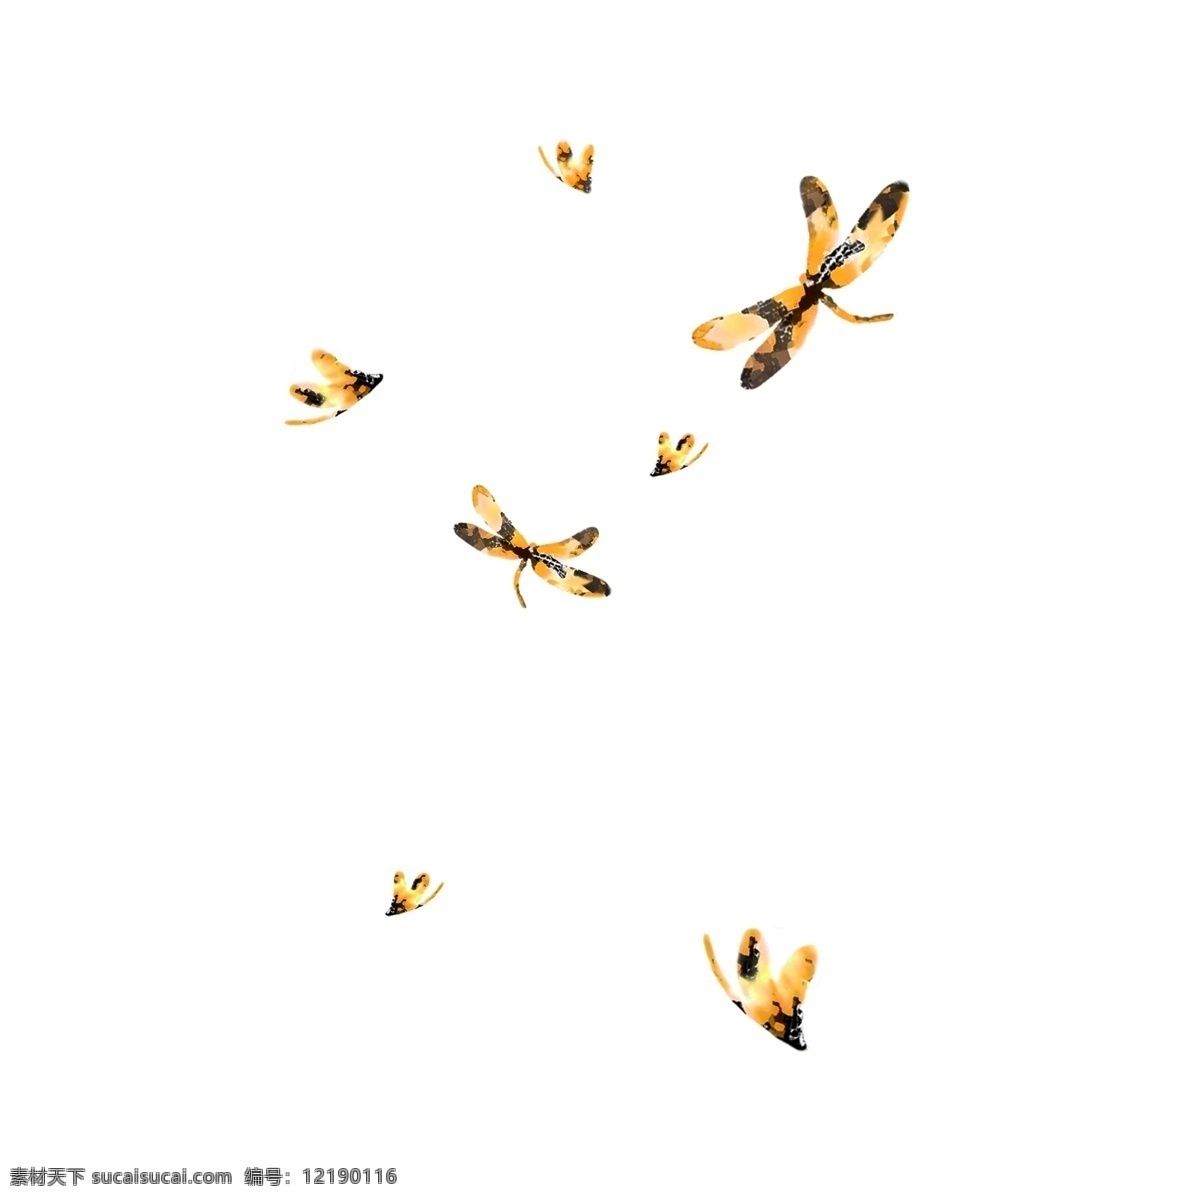 水彩 手绘 水墨 黄色 蜻蜓 水彩蜻蜓 手绘蜻蜓 水墨蜻蜓 一群 空中 飞舞 抽象艺术蜻蜓 黄色水墨蜻蜓